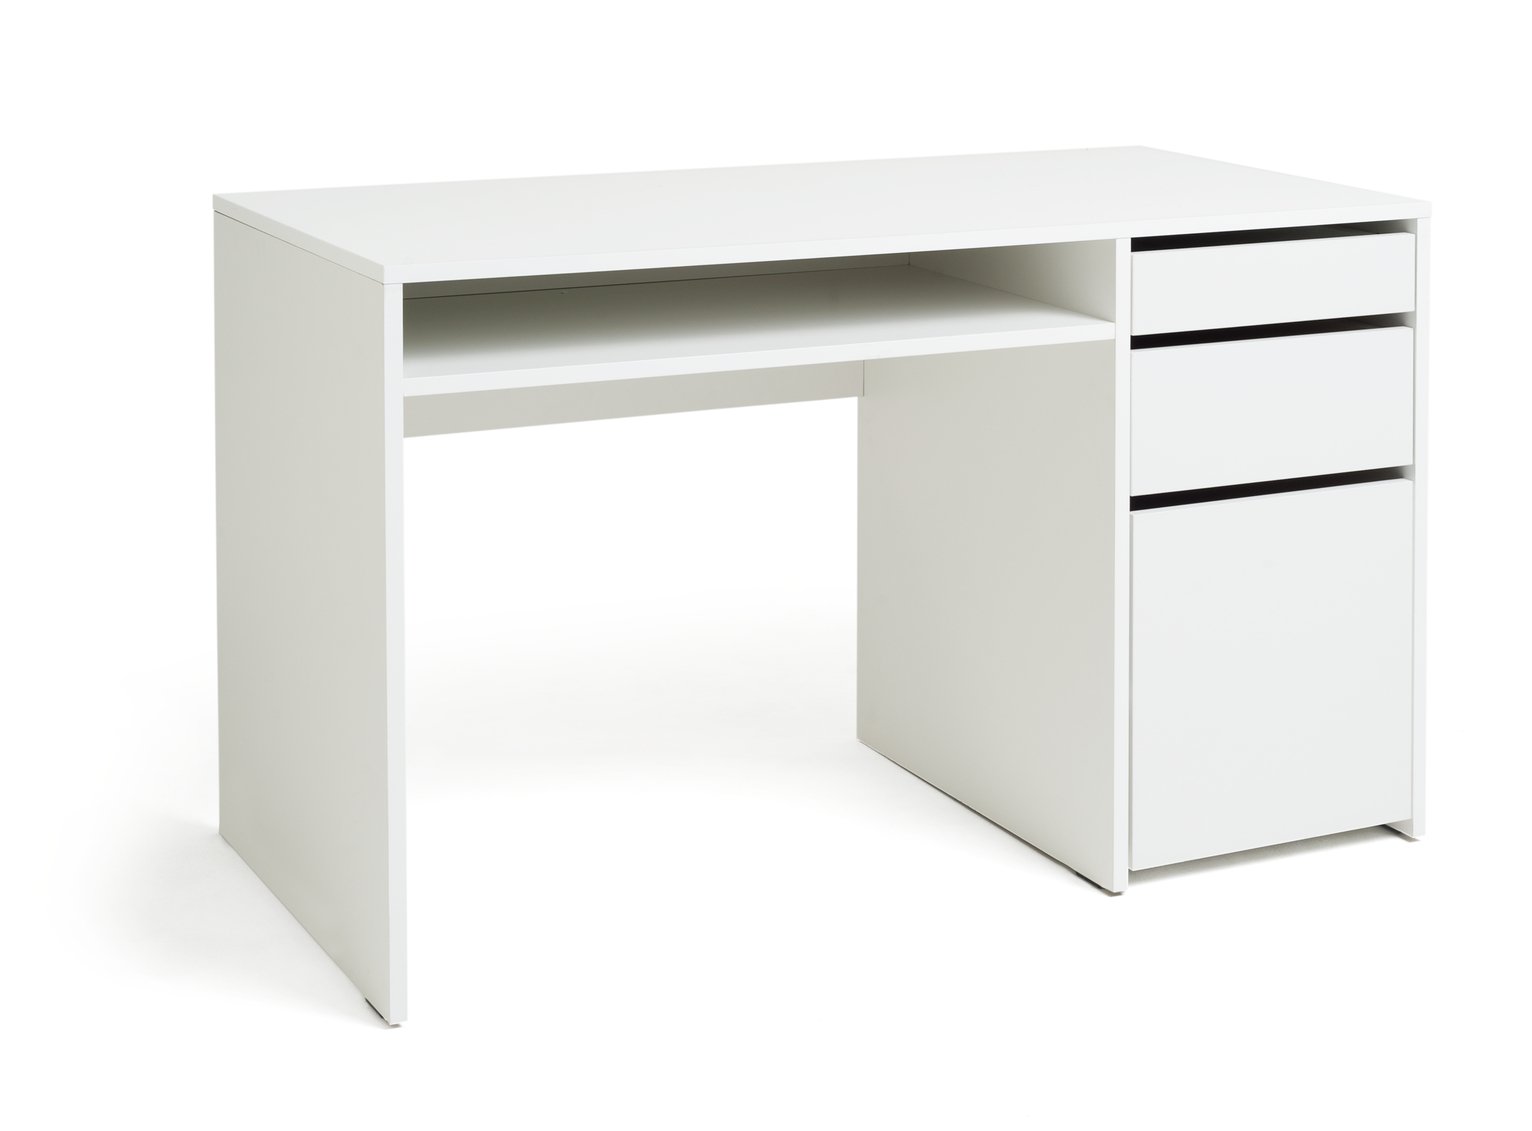 Habitat Pepper 2 Drawer Pedestal Desk - White